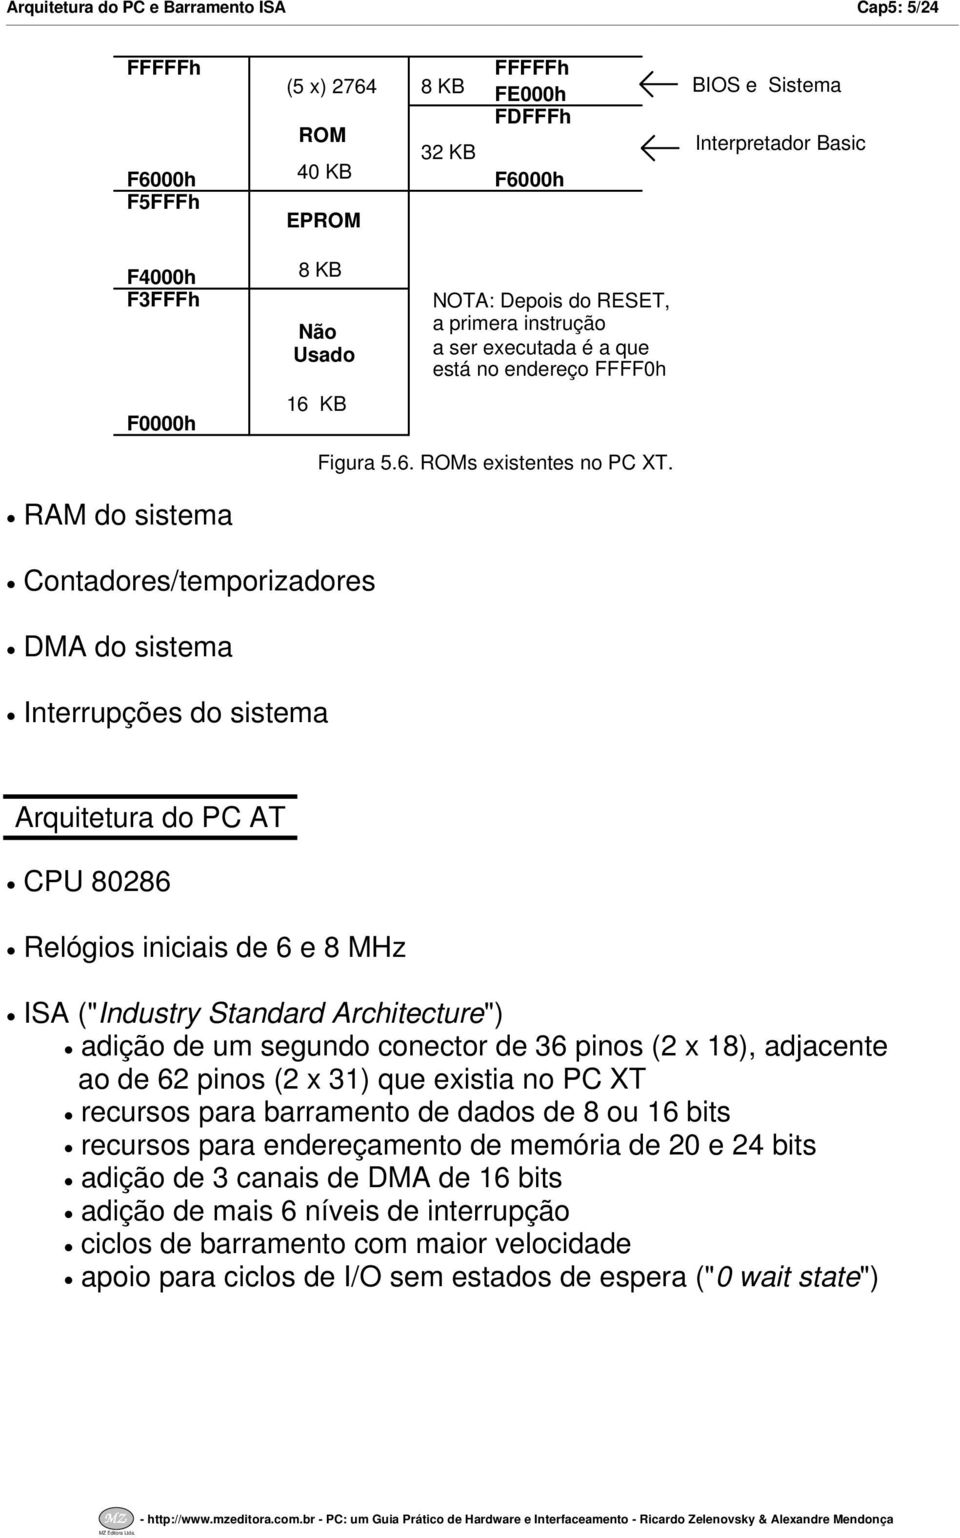 RAM do sistema Contadorestemporizadores DMA do sistema Interrupções do sistema Arquitetura do PC AT CPU 80286 Relógios iniciais de 6 e 8 MHz ISA ("Industry Standard Architecture") adição de um